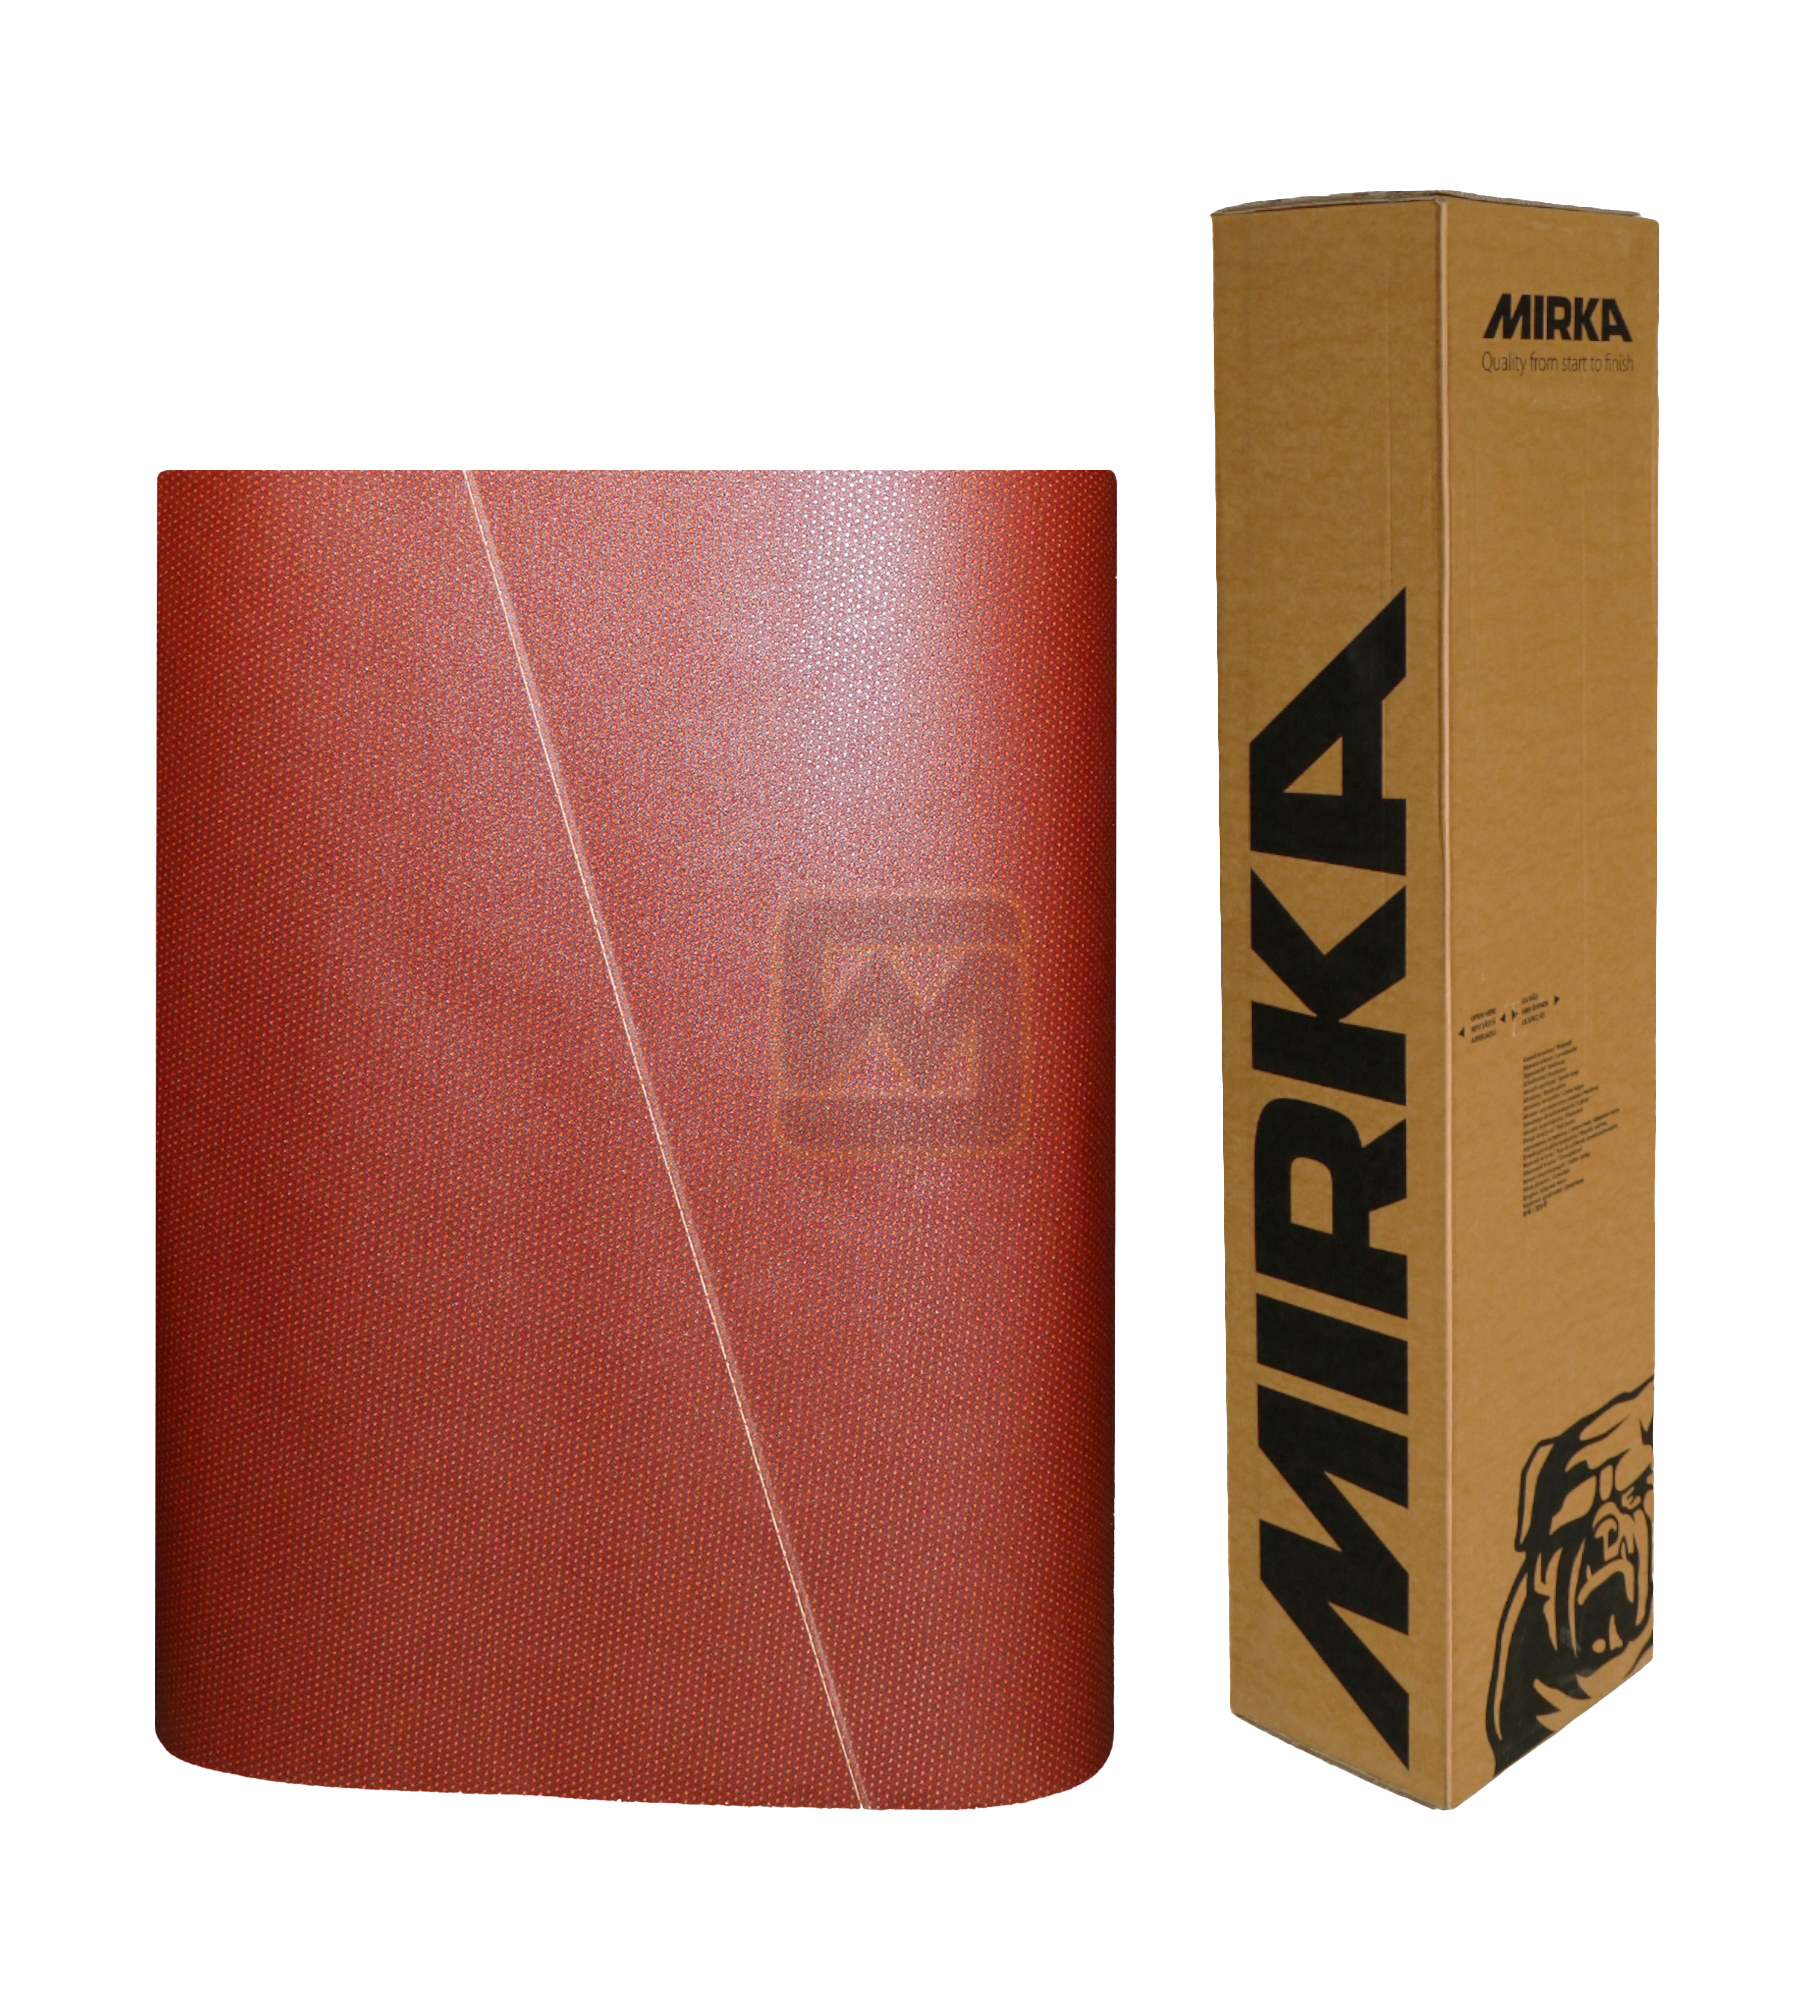 Abbildung Mirka Ultimax 1350x2150mm Breitband mit Verpackung.